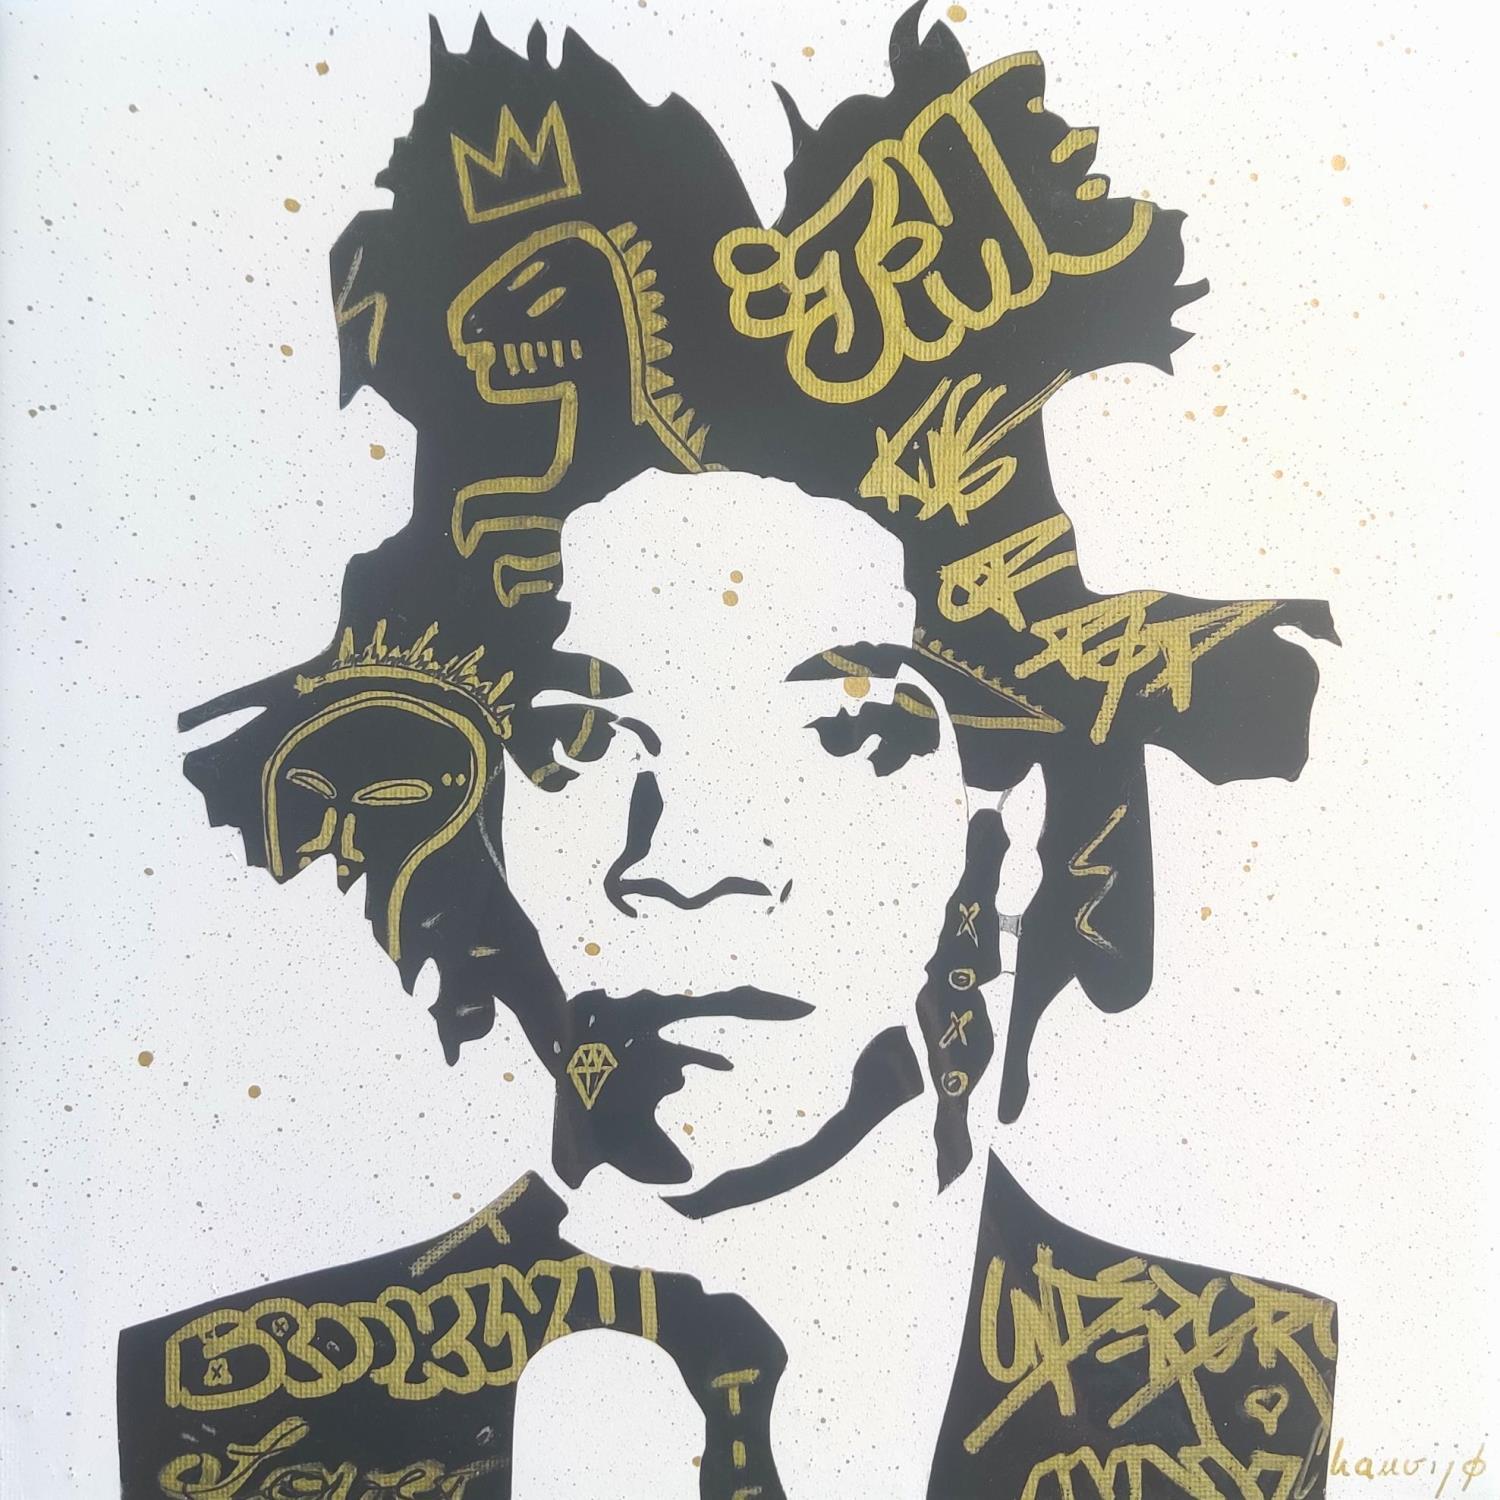 jean michel basquiat kunstwerke - street art pop art kunstler